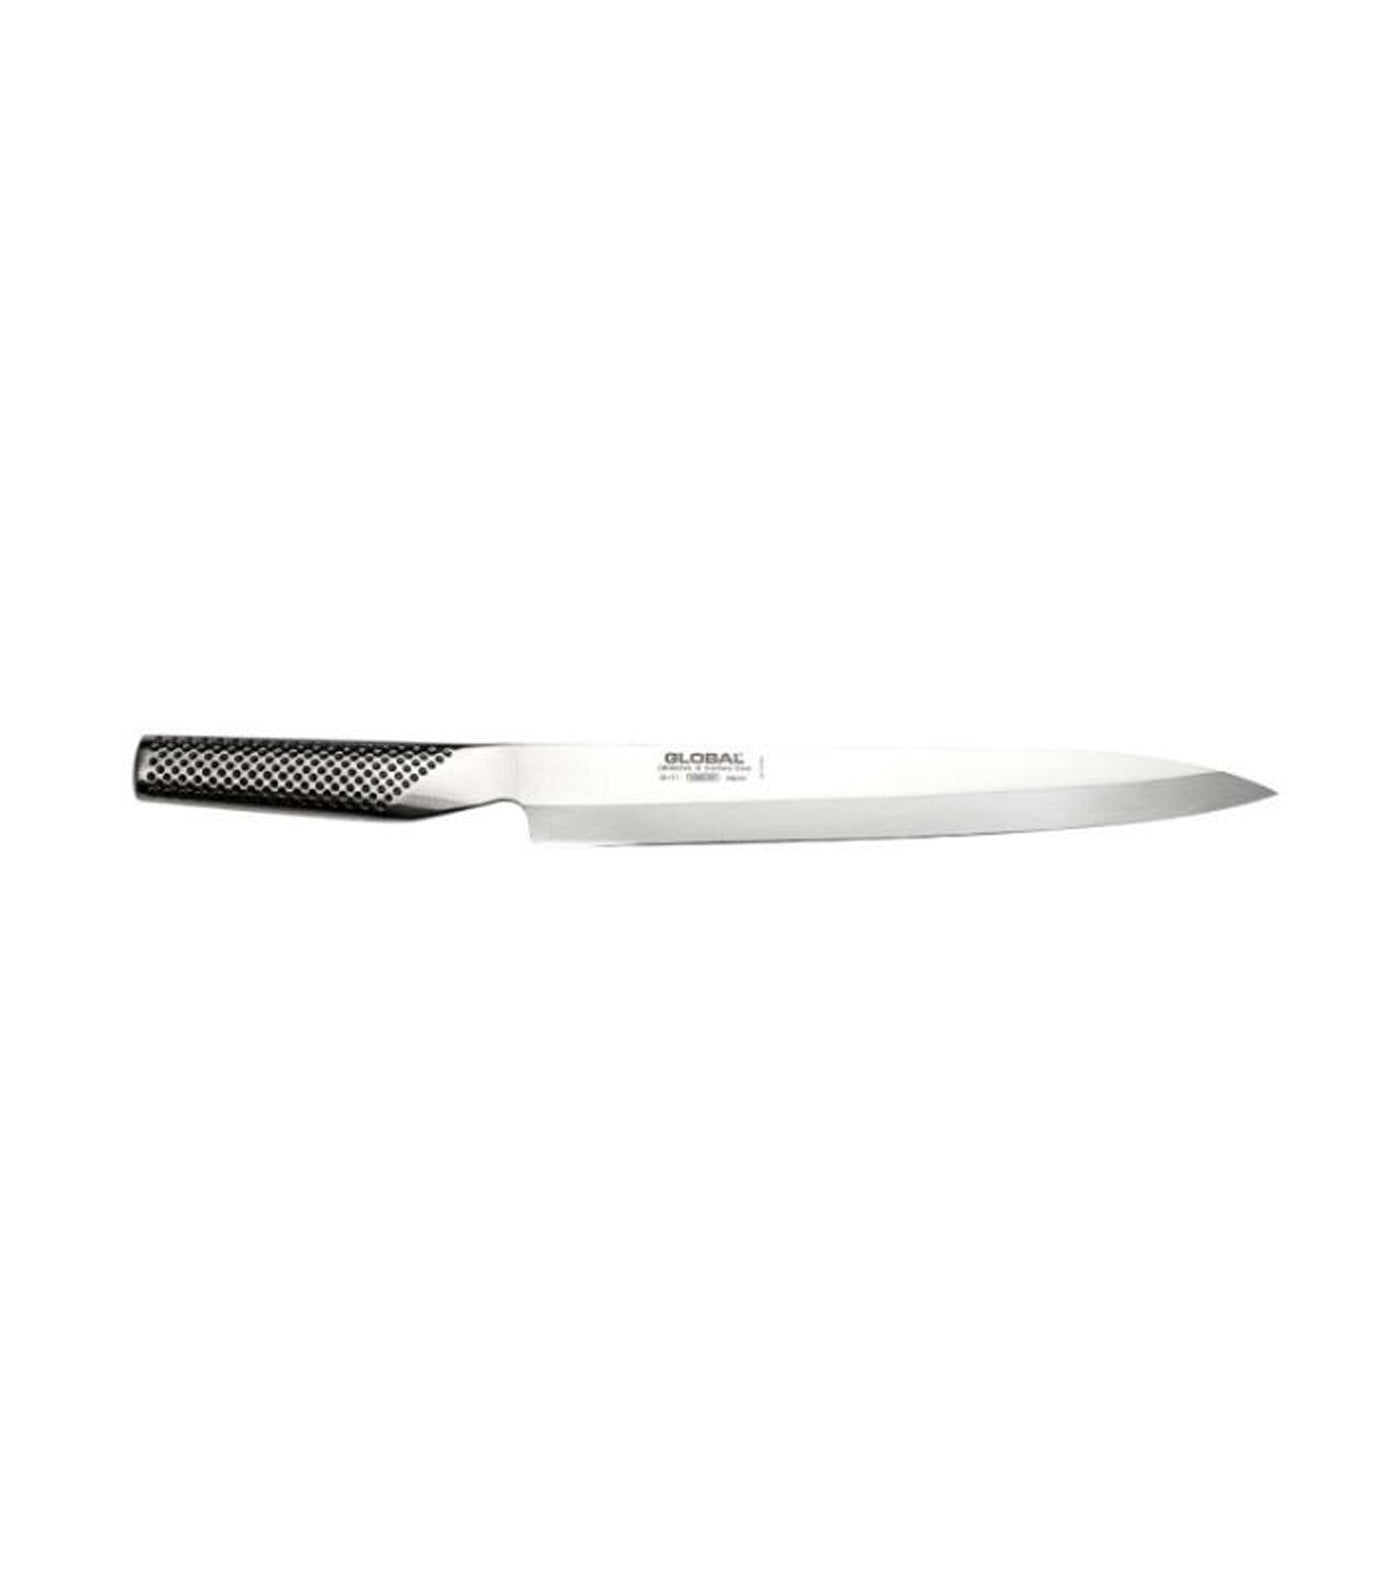 Global G-11 Yanagi Sashimi Knife - 25cm